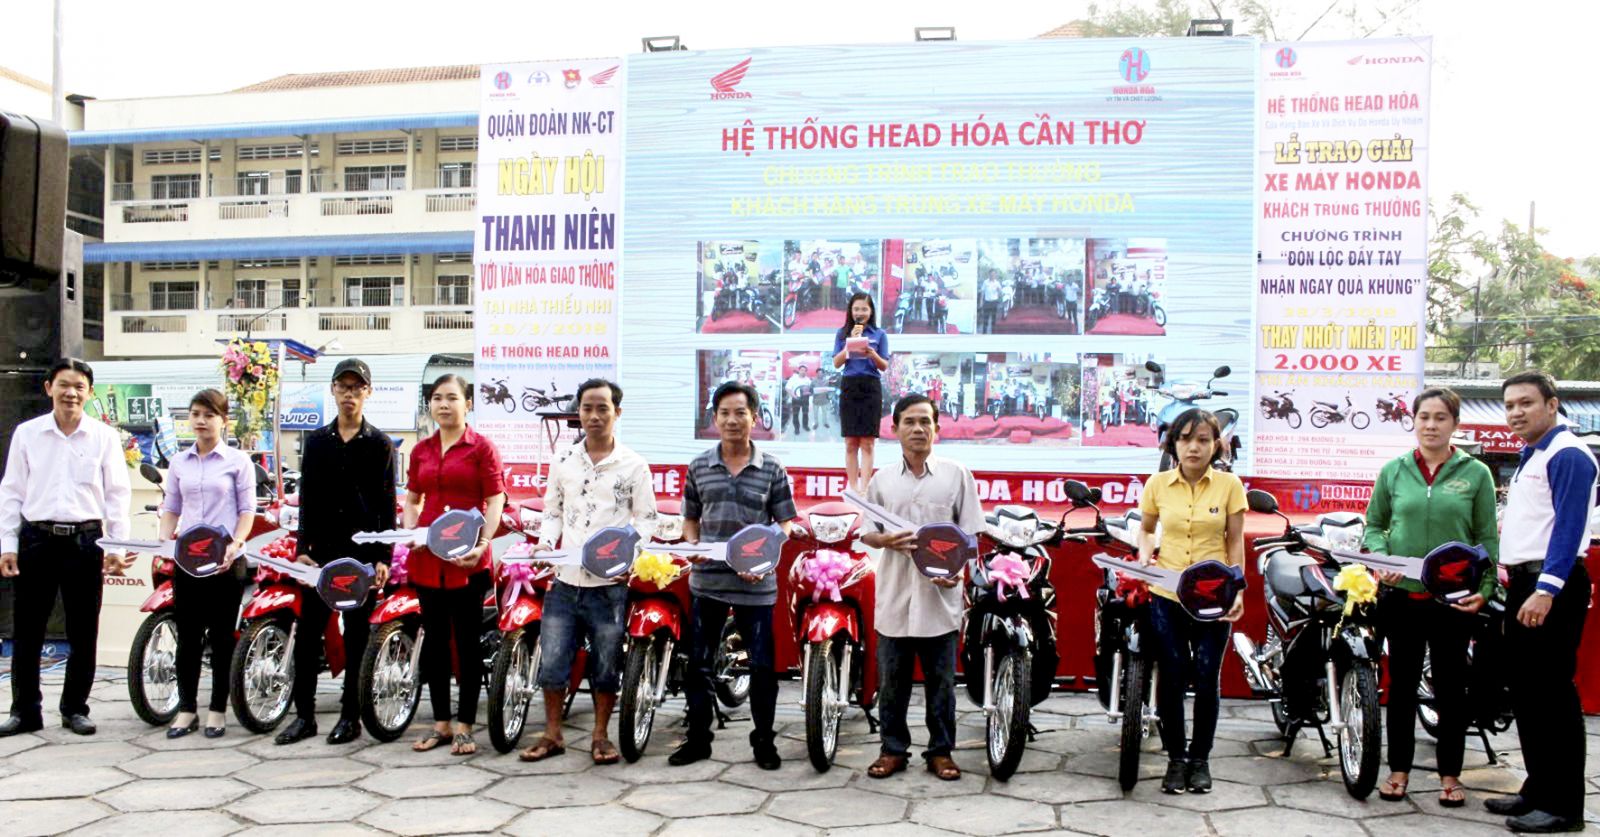 10 khách hàng được đại diện HEAD Honda HÓA trao tặng xe gắn máy từ Chương trình khuyến mãi “Đón lộc đầy tay, nhận ngay quà khủng”. Ảnh: HÀ VĂN